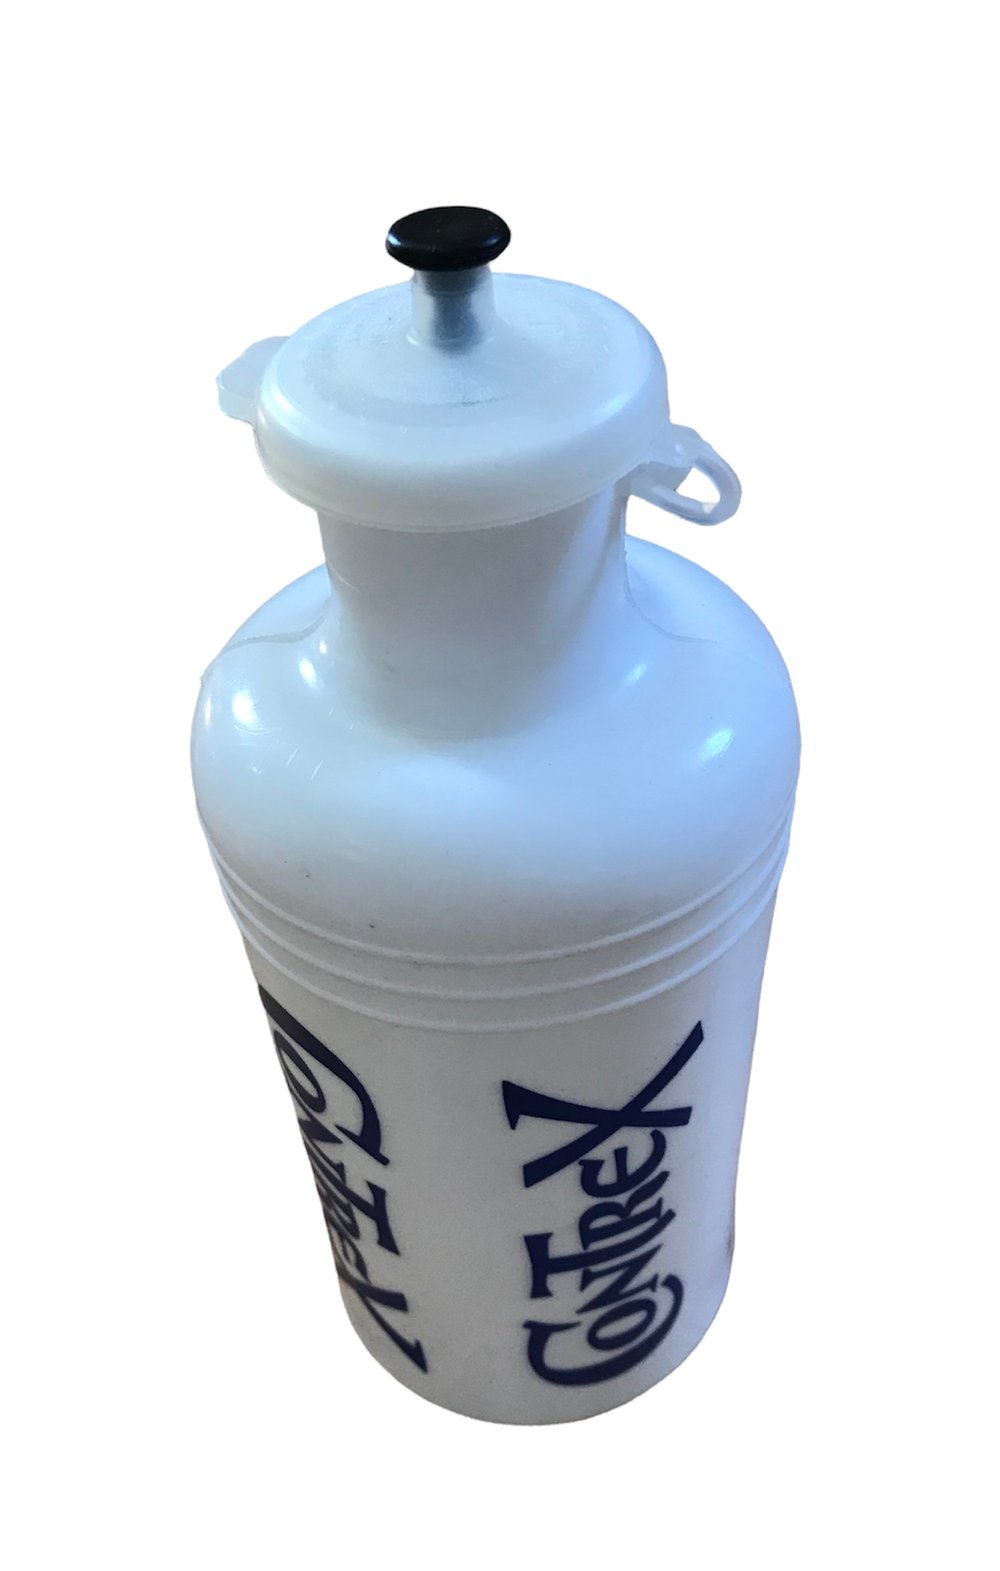 Vintage 1981-84 ðŸ‡«ðŸ‡· Tour de France / Contrex water bottle